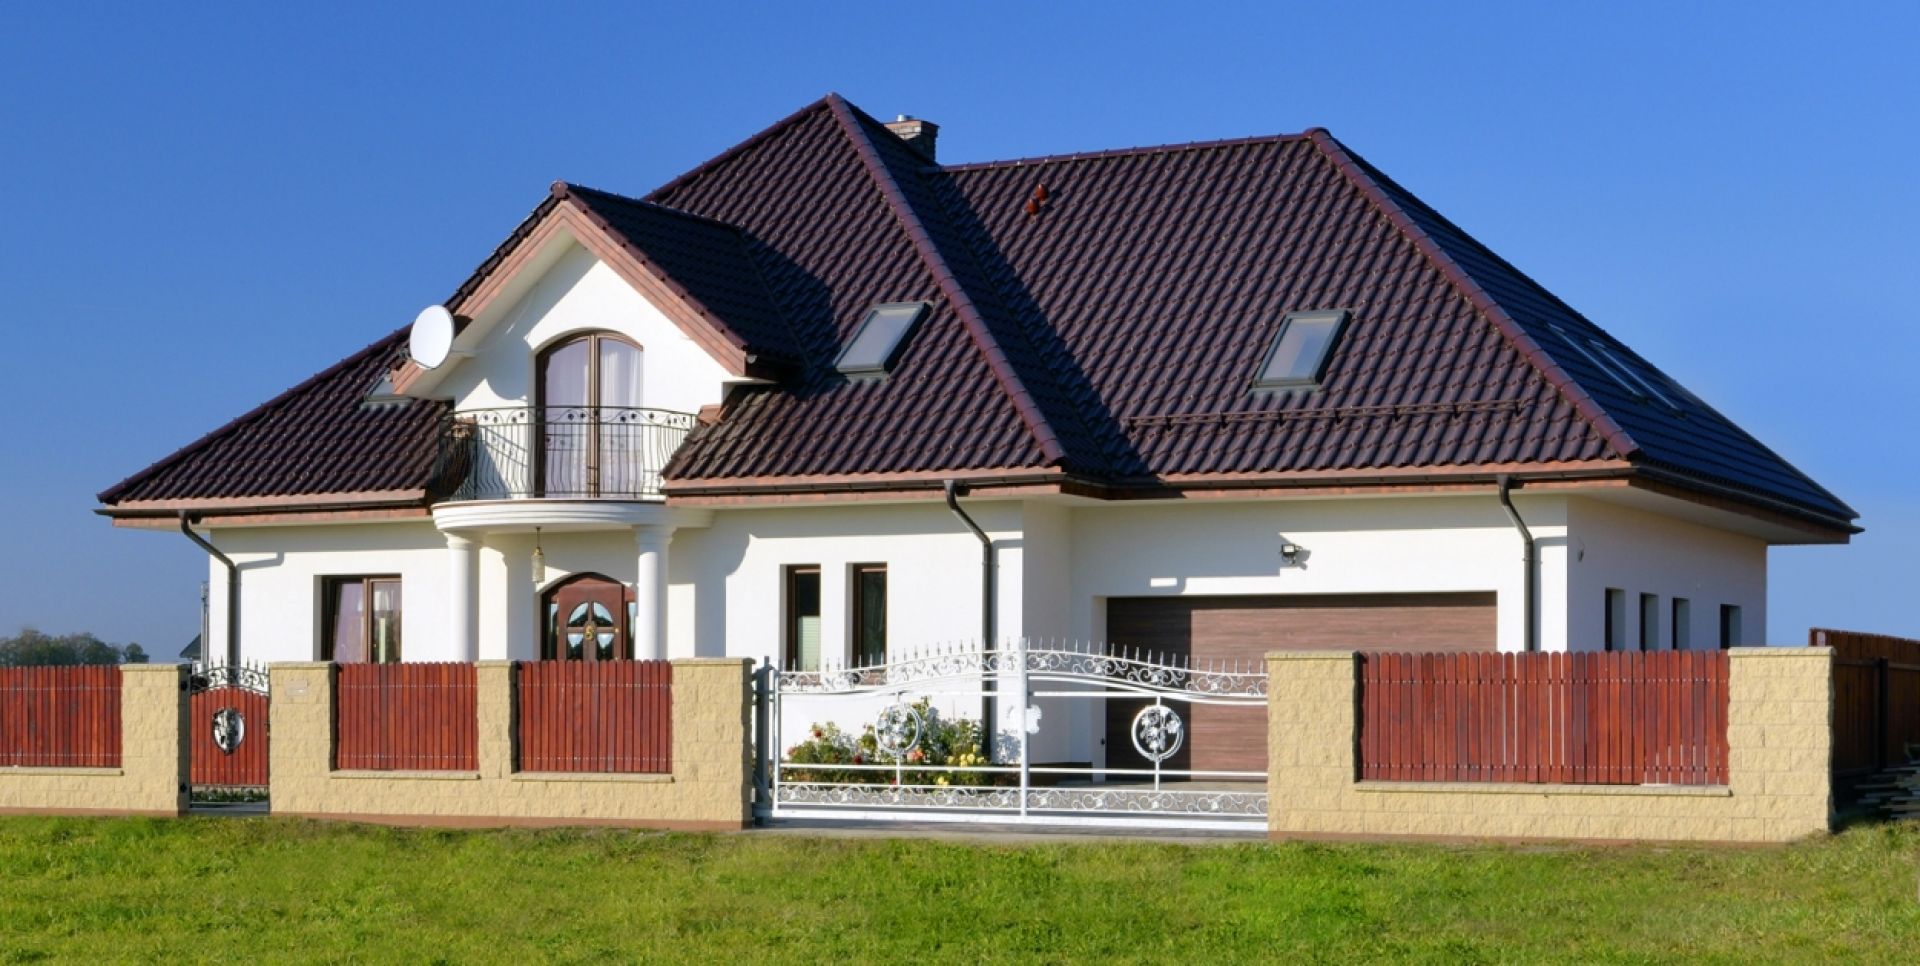 Model dachówki, na który się zdecydujemy podczas kładzenia lub remontowania dachu, powinien być nie tylko dopasowany estetycznie do wyglądu domu czy też jego otoczenia, ale przede wszystkim maksymalnie funkcjonalny. Fot. Creaton